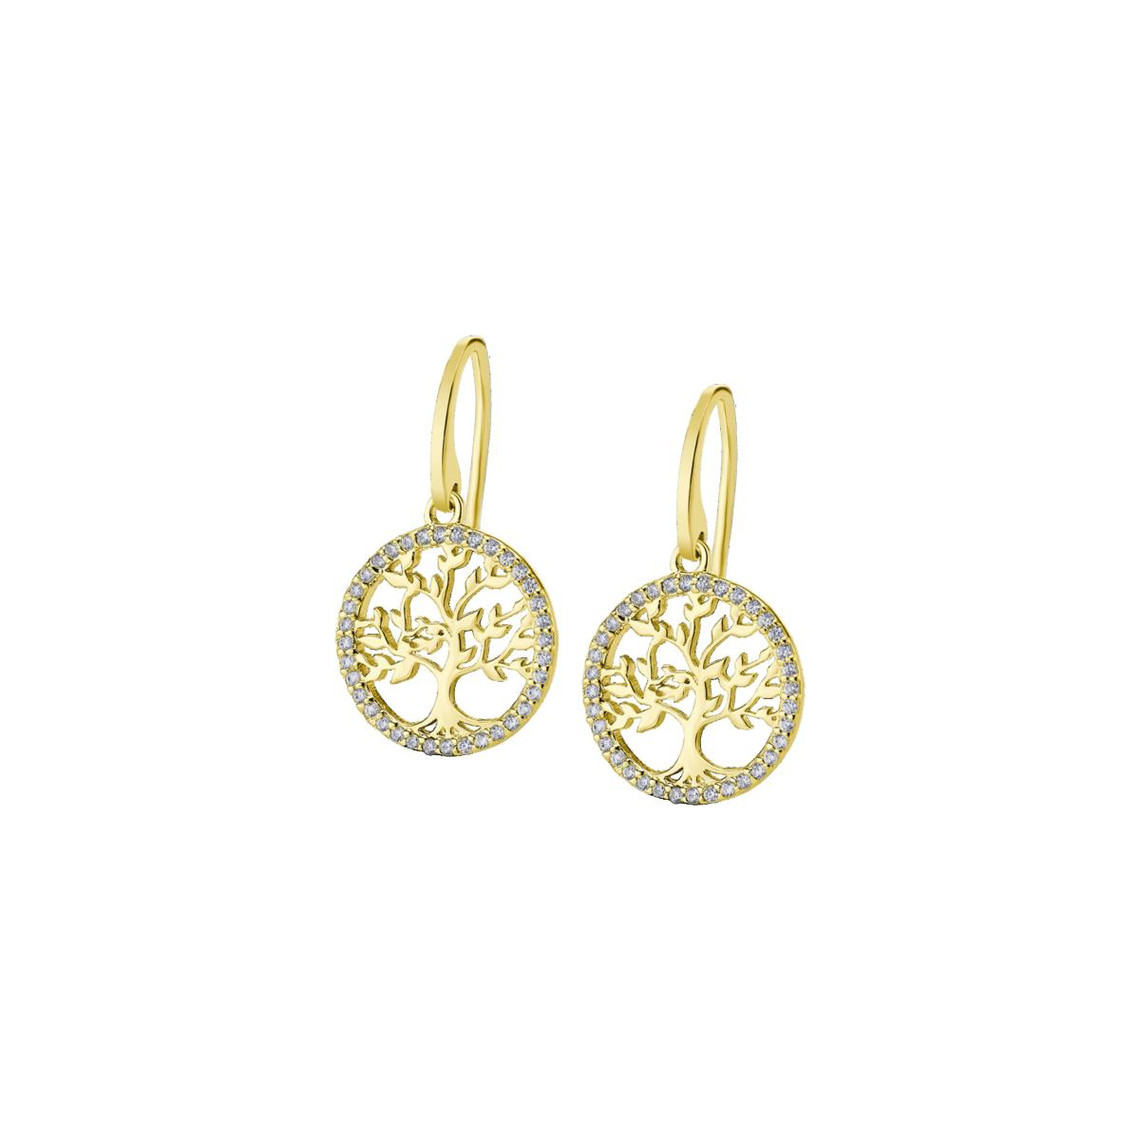 boucles d'oreilles femme lotus silver - lp1746-4-2 argent doré